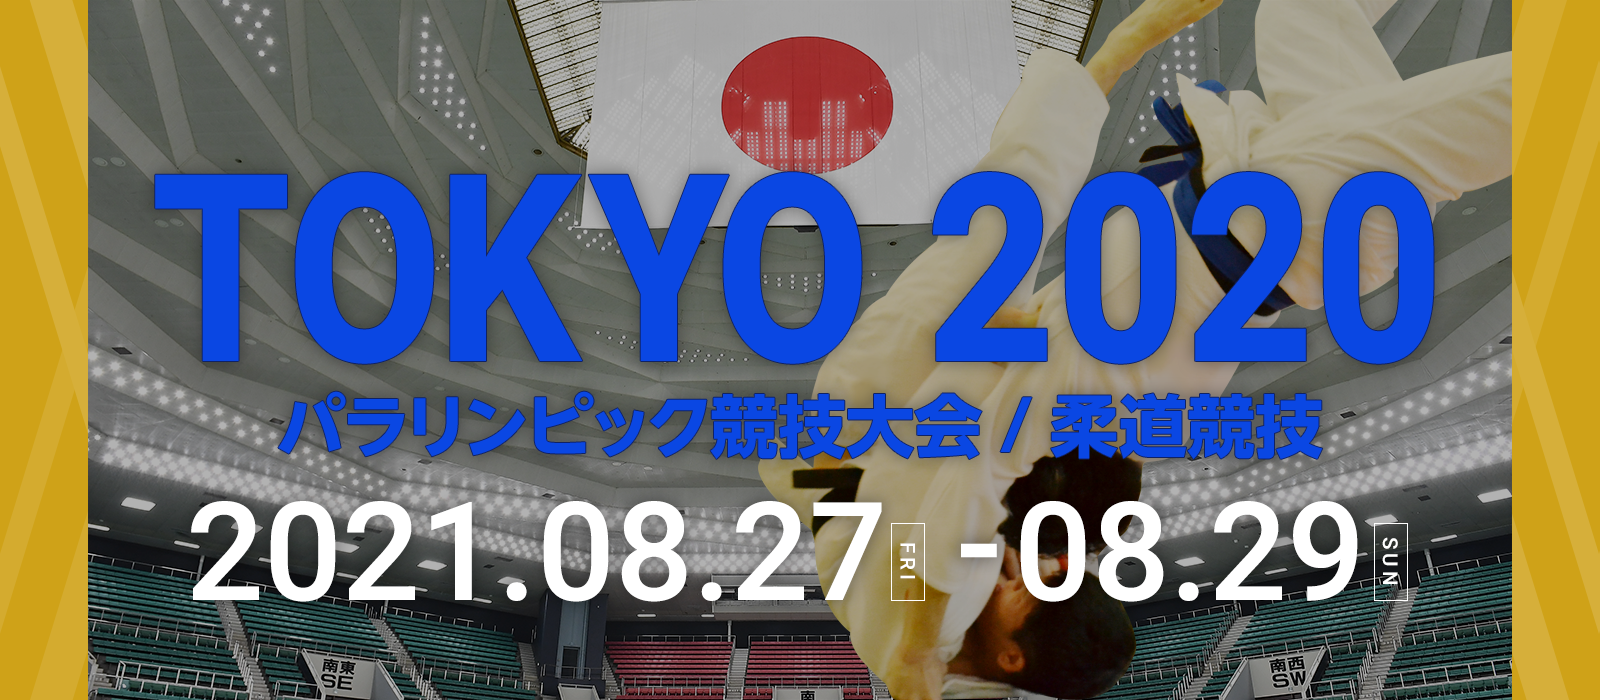 TOKYO 2020 パラリンピック | 全日本柔道連盟